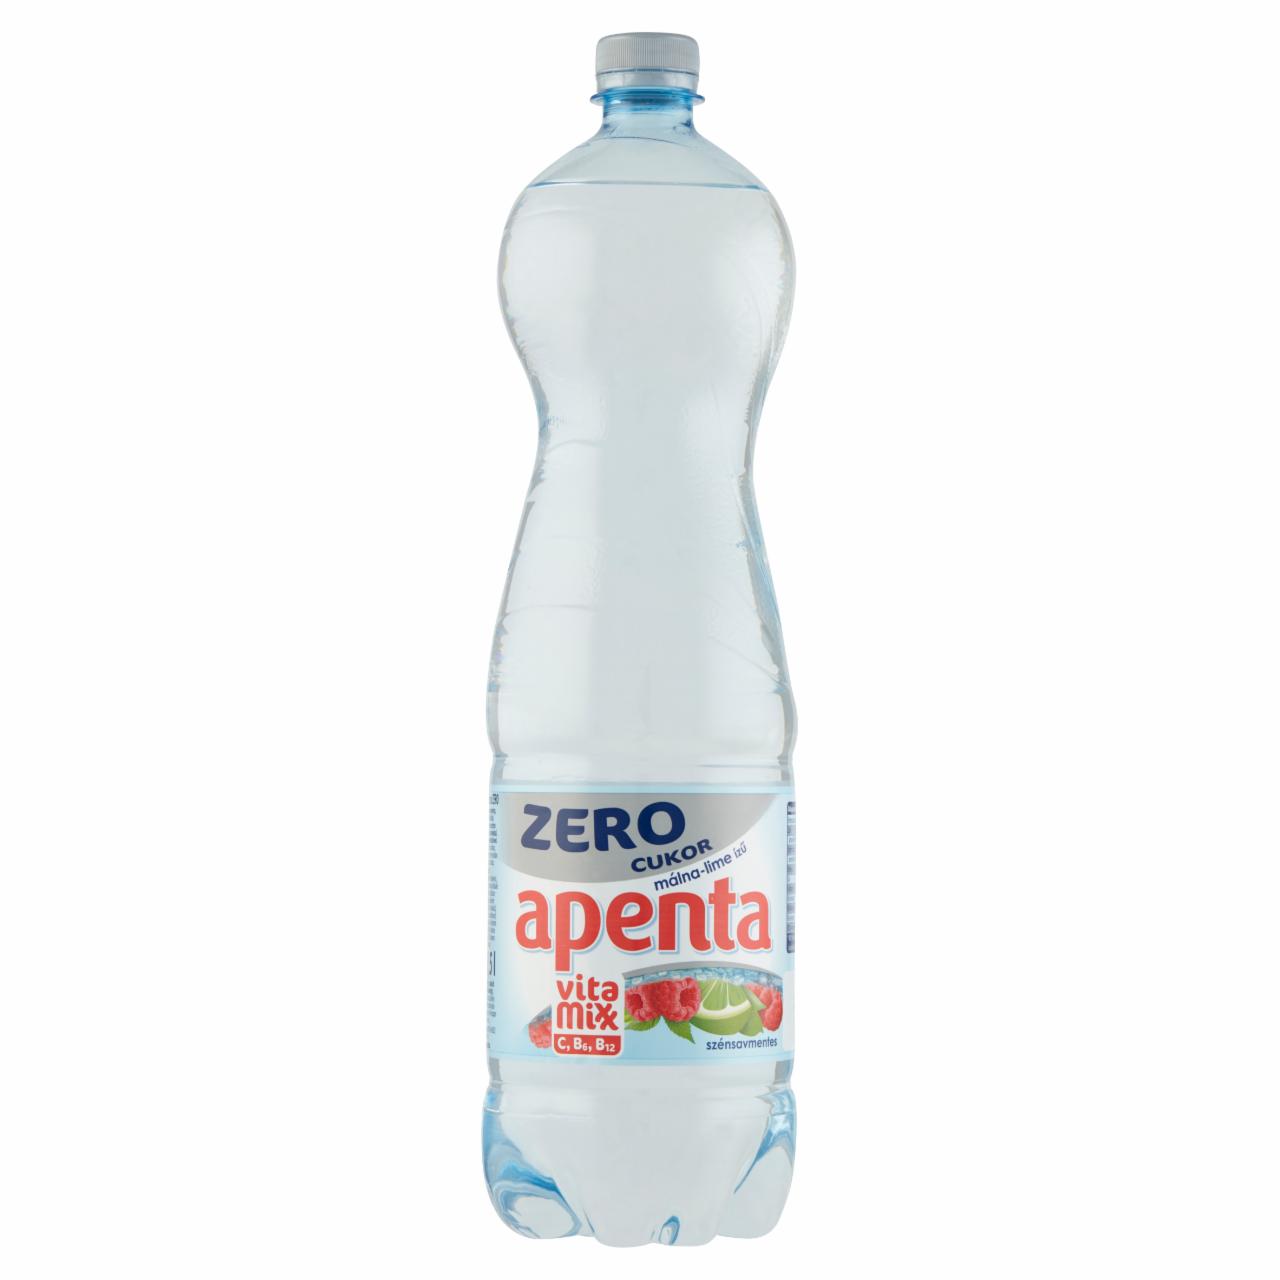 Képek - Apenta Vitamixx Zero málna-lime ízű szénsavmentes, energiamentes üdítőital édesítőszerekkel 1,5 l